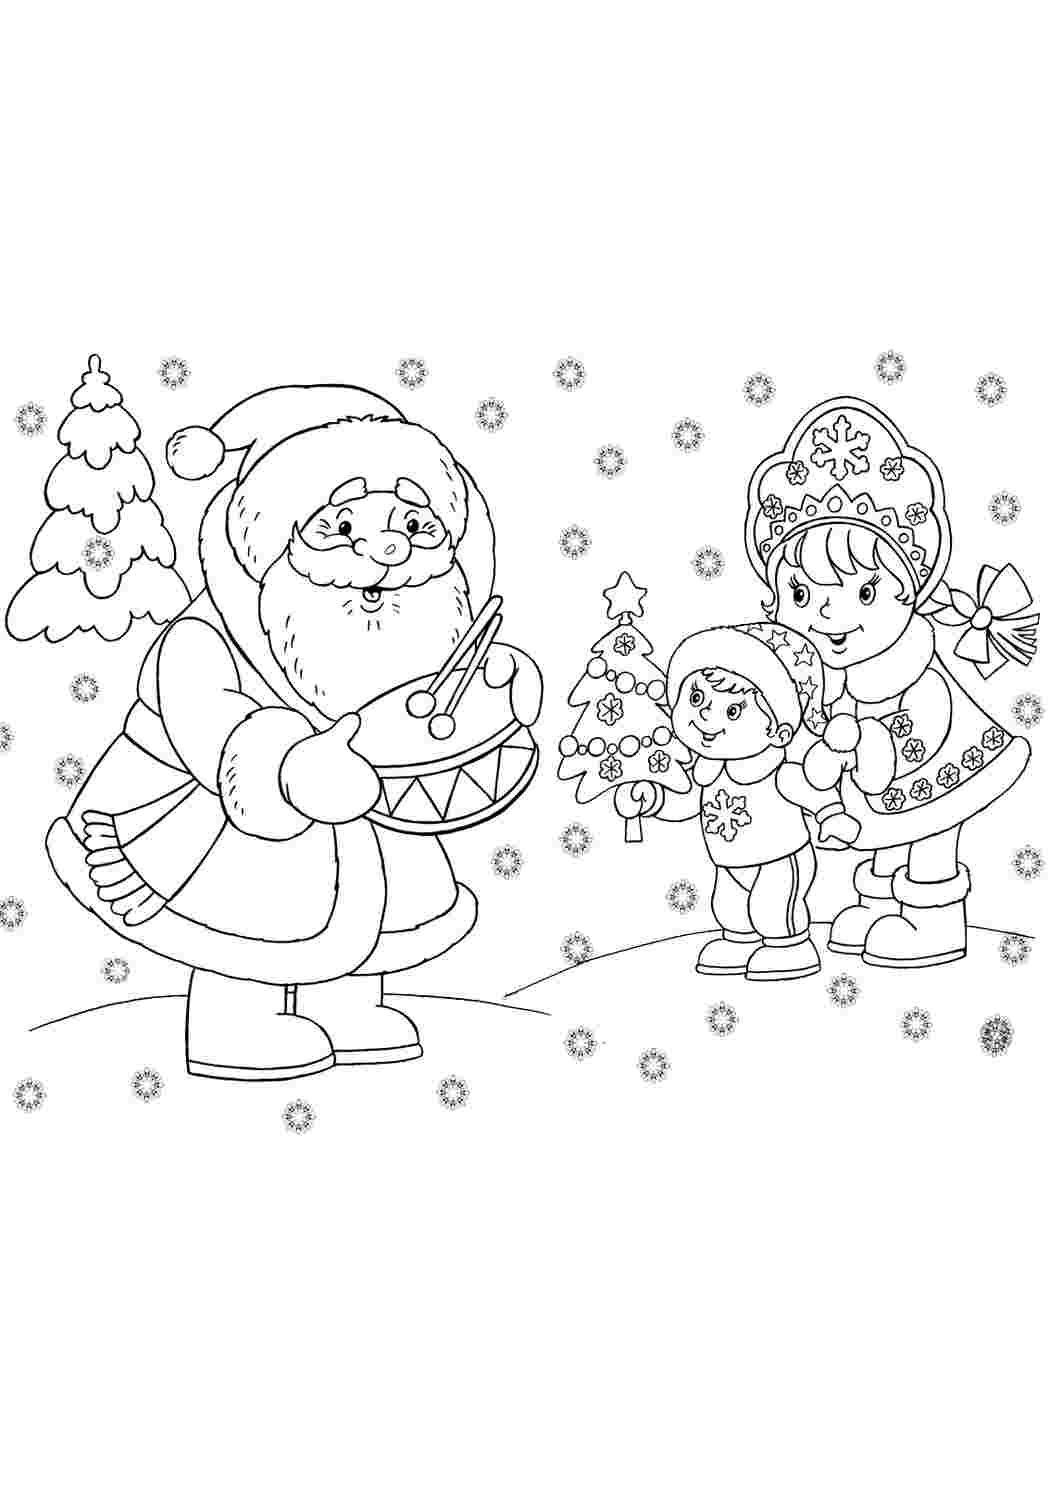 Раскраски Снегурочка и Дед Мороз. Онлайн раскраски. Снегурочка и Дед Мороз. Раскраски для развития.